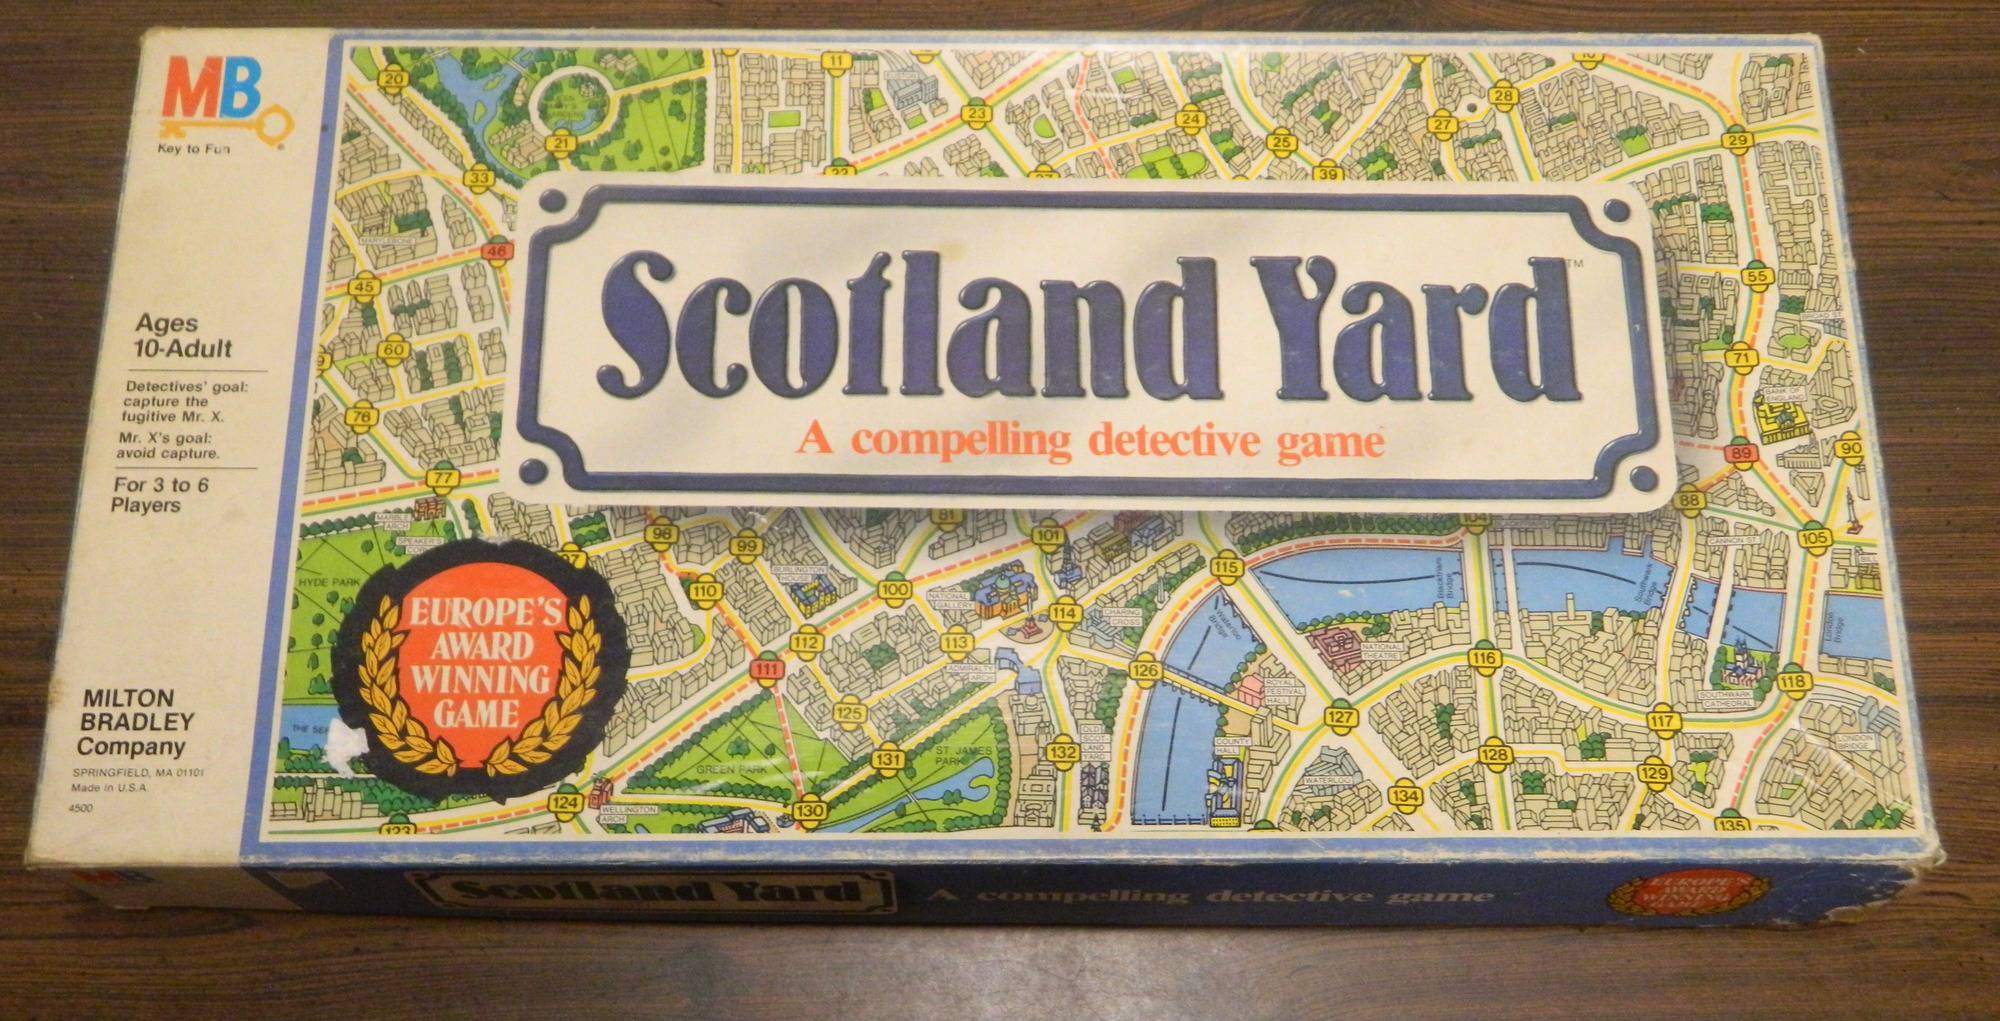 Box for Scotland Yard